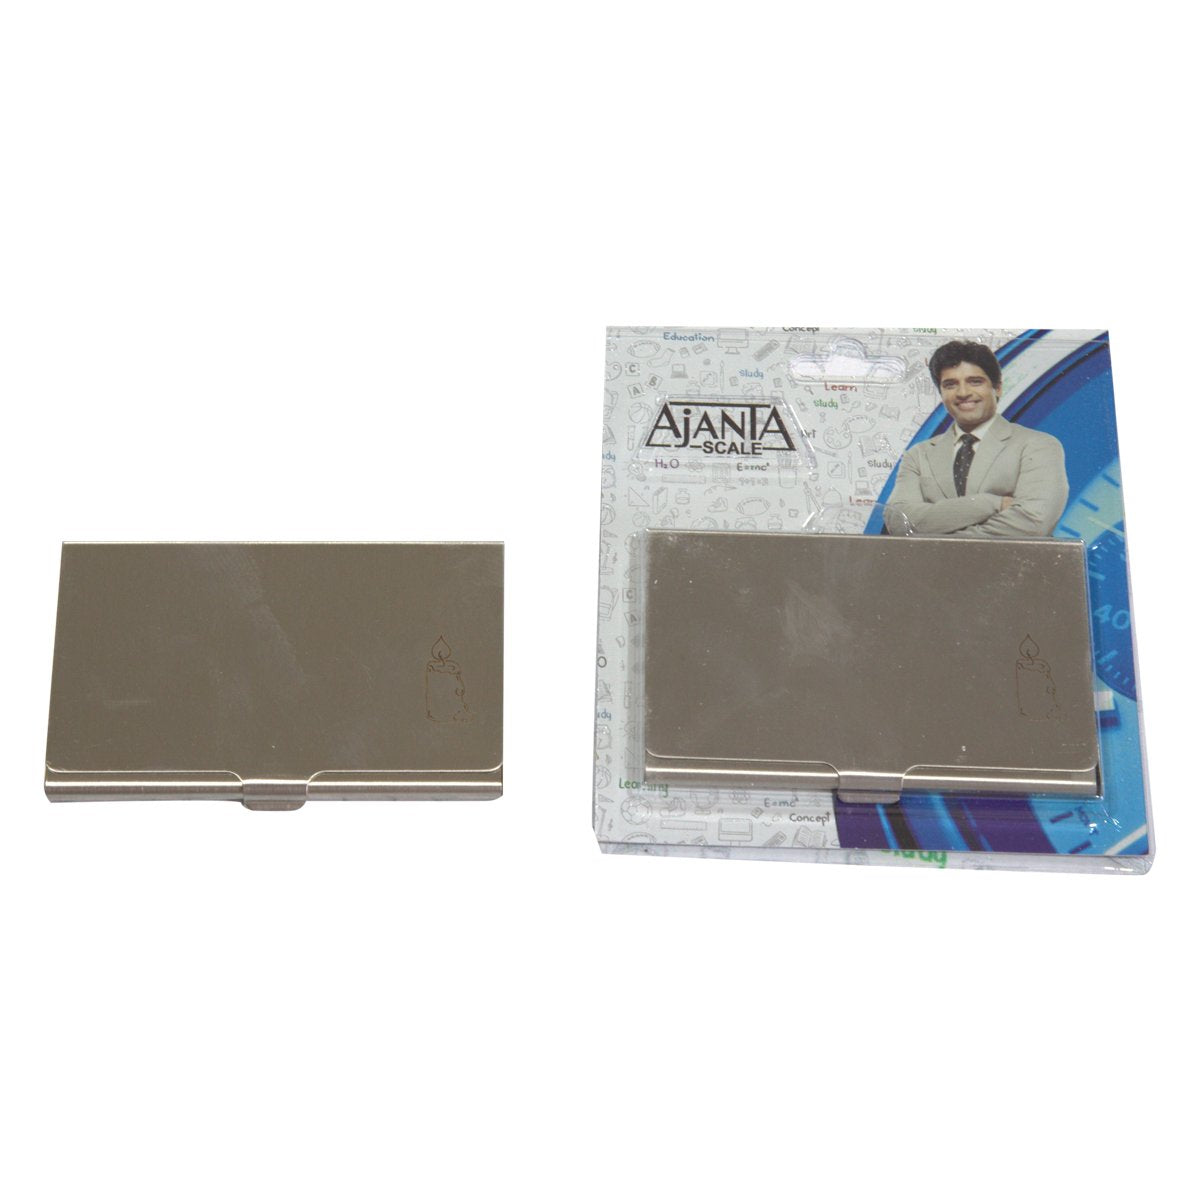 Ajanta Card Holder 908 (1 Pcs.) Credit Card Holder Debit Card Holder Business Card Holder Visiting Card Holder Visiting Card Case ATM Card Holder Stainless Steel Card Holder - Scoffco